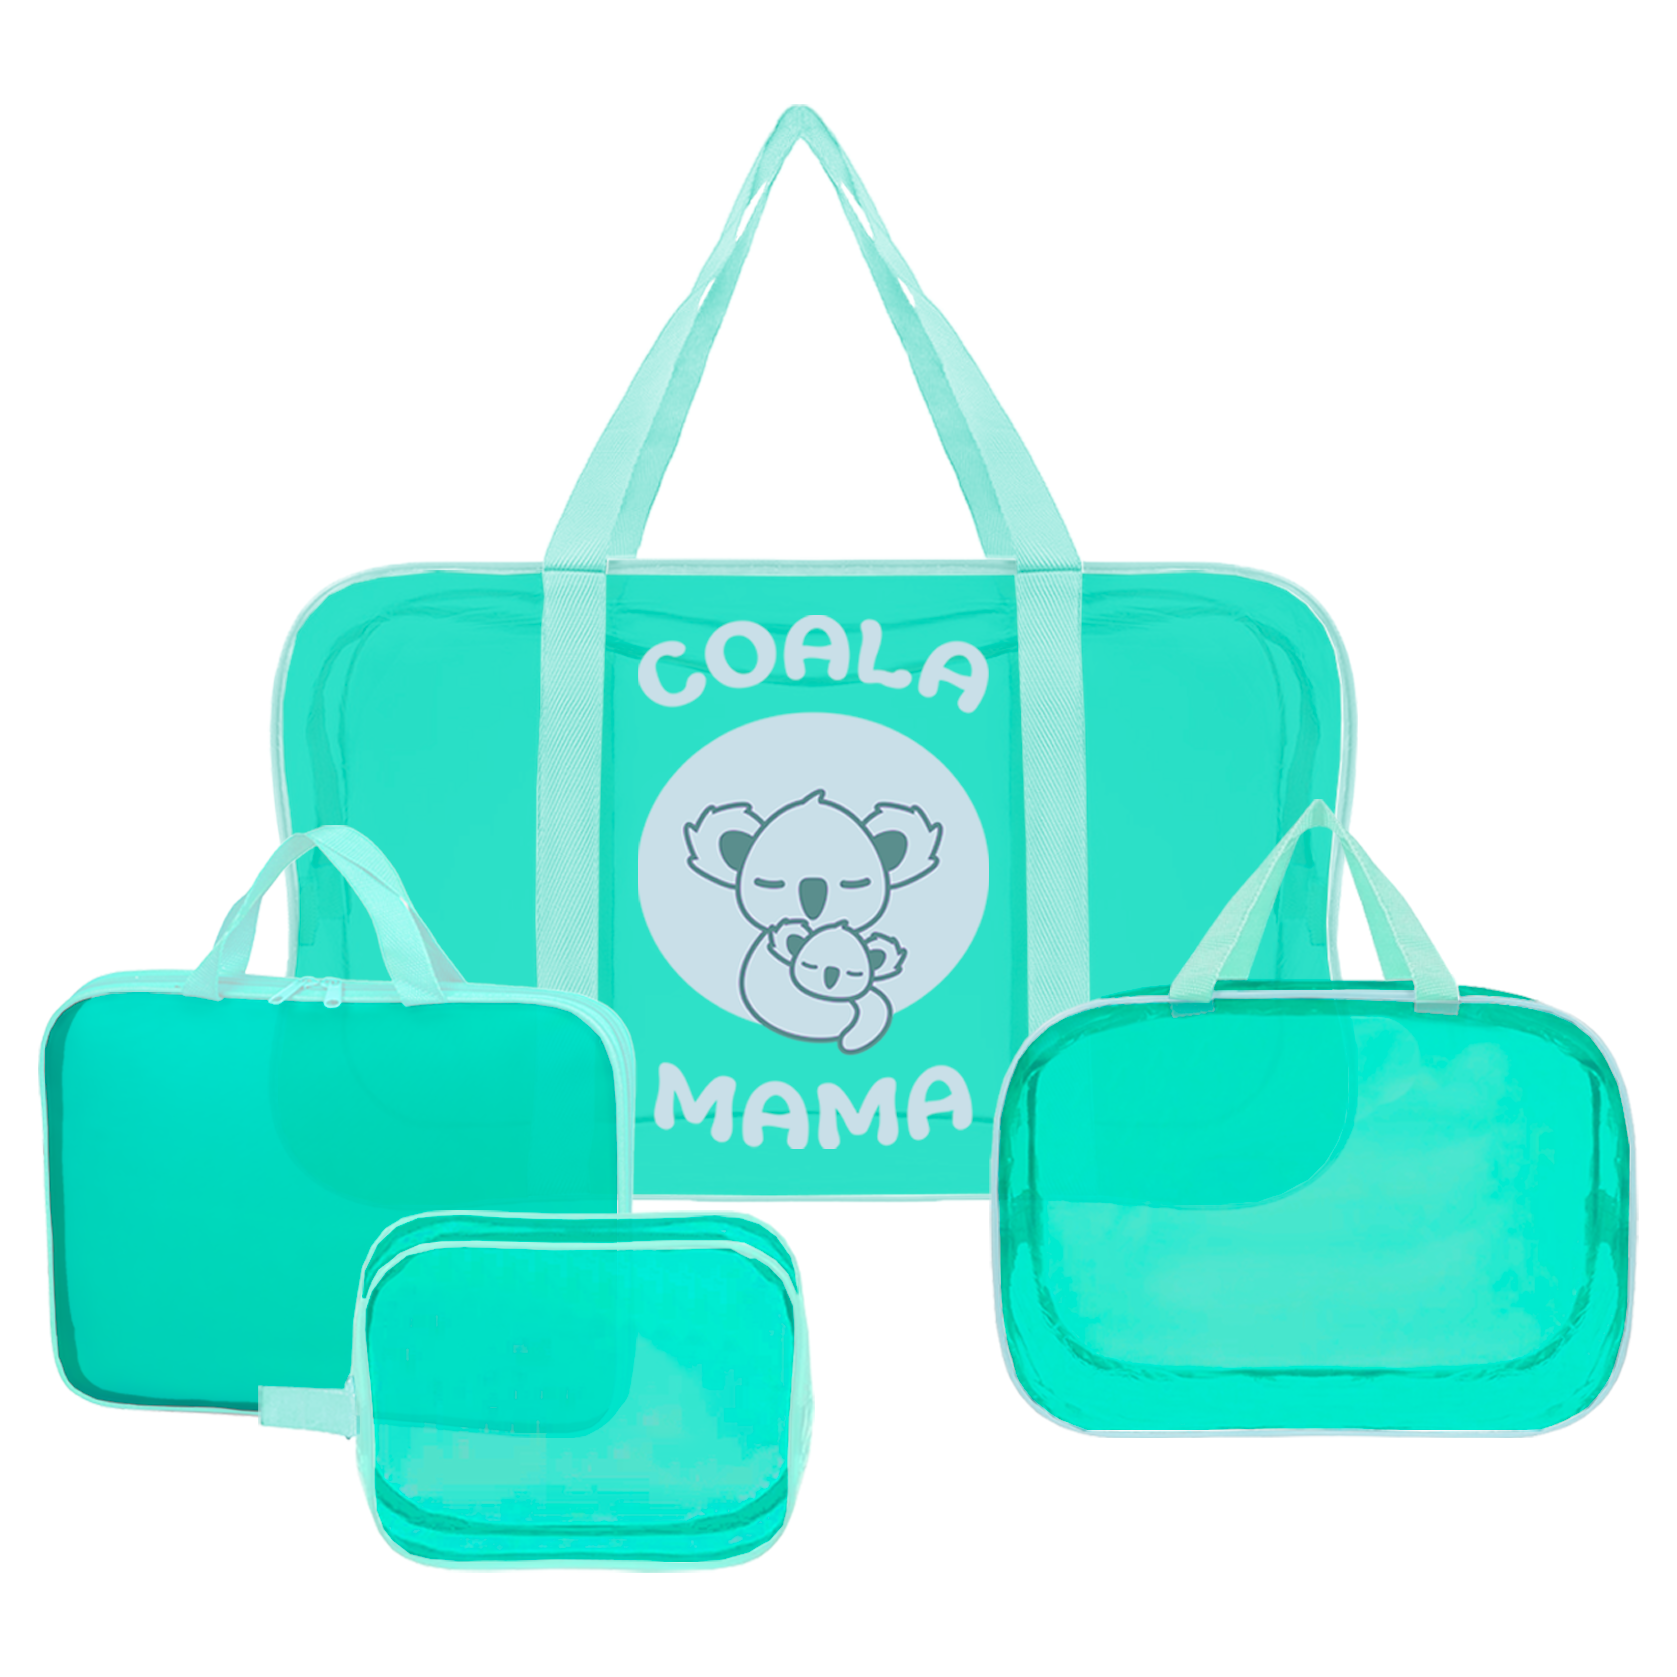 Набор сумок в роддом Coala Mama, цвет Dark Tiffany, 4 шт. универсальных размеров, CMDT4